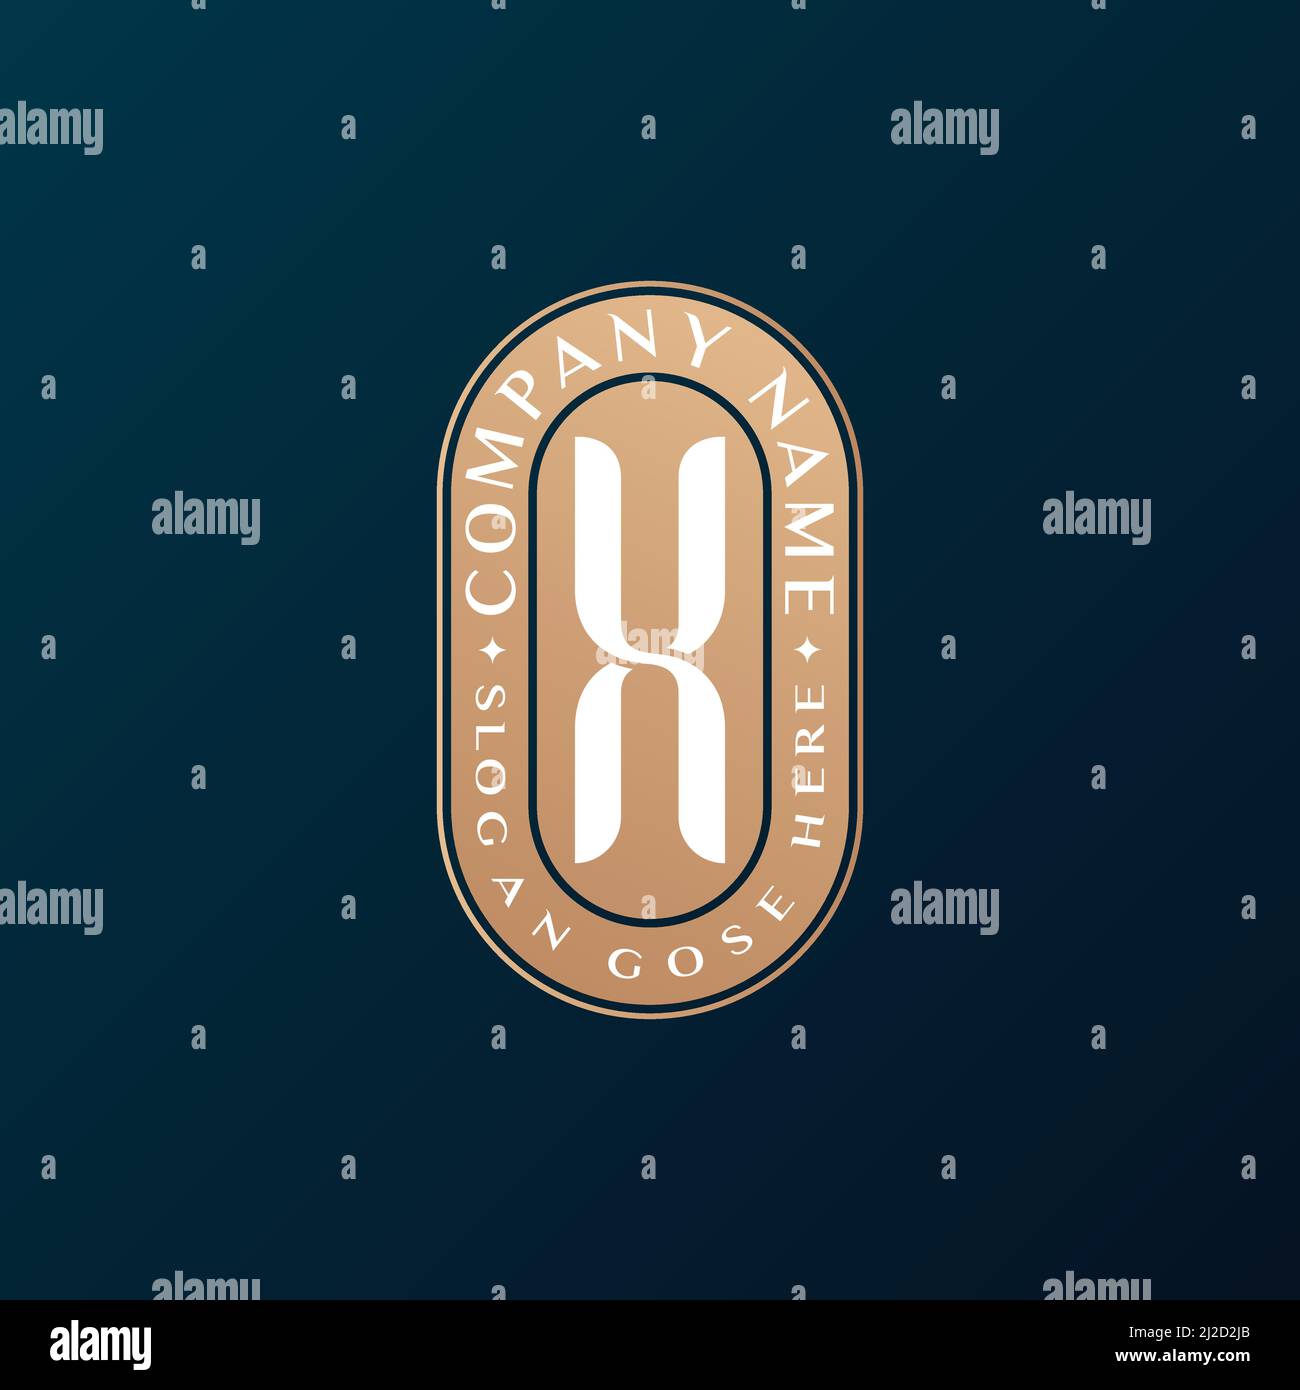 Abstrait Emblem Premium luxe identité d'entreprise élégant lettre X logo design Illustration de Vecteur